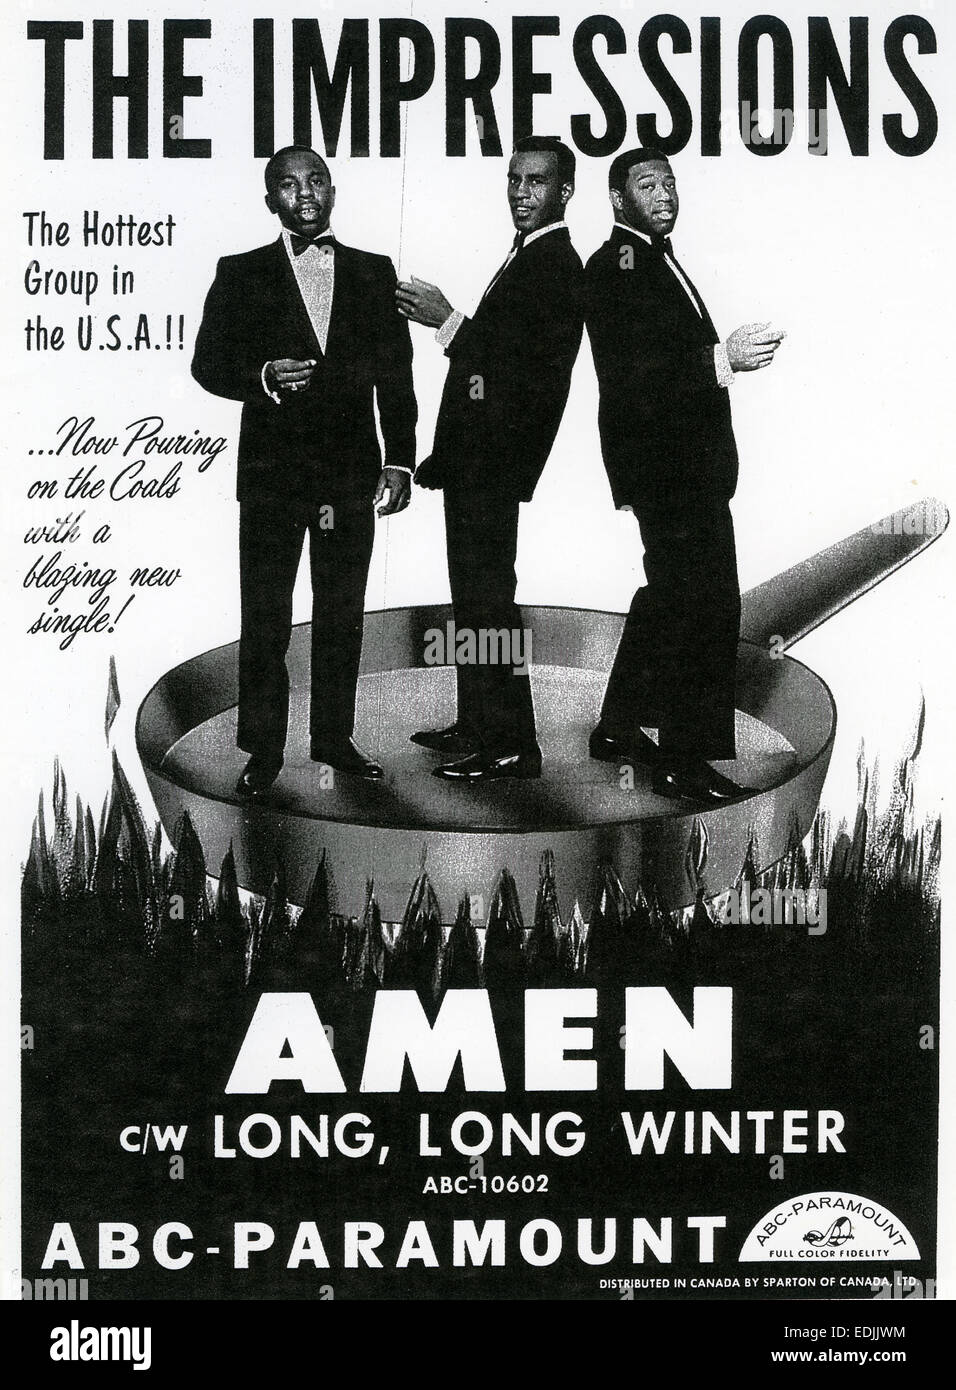 Le impressioni di noi gruppo vocale nel 1964 in un annuncio pubblicitario per la loro versione tradizionale di un brano del Vangelo Foto Stock